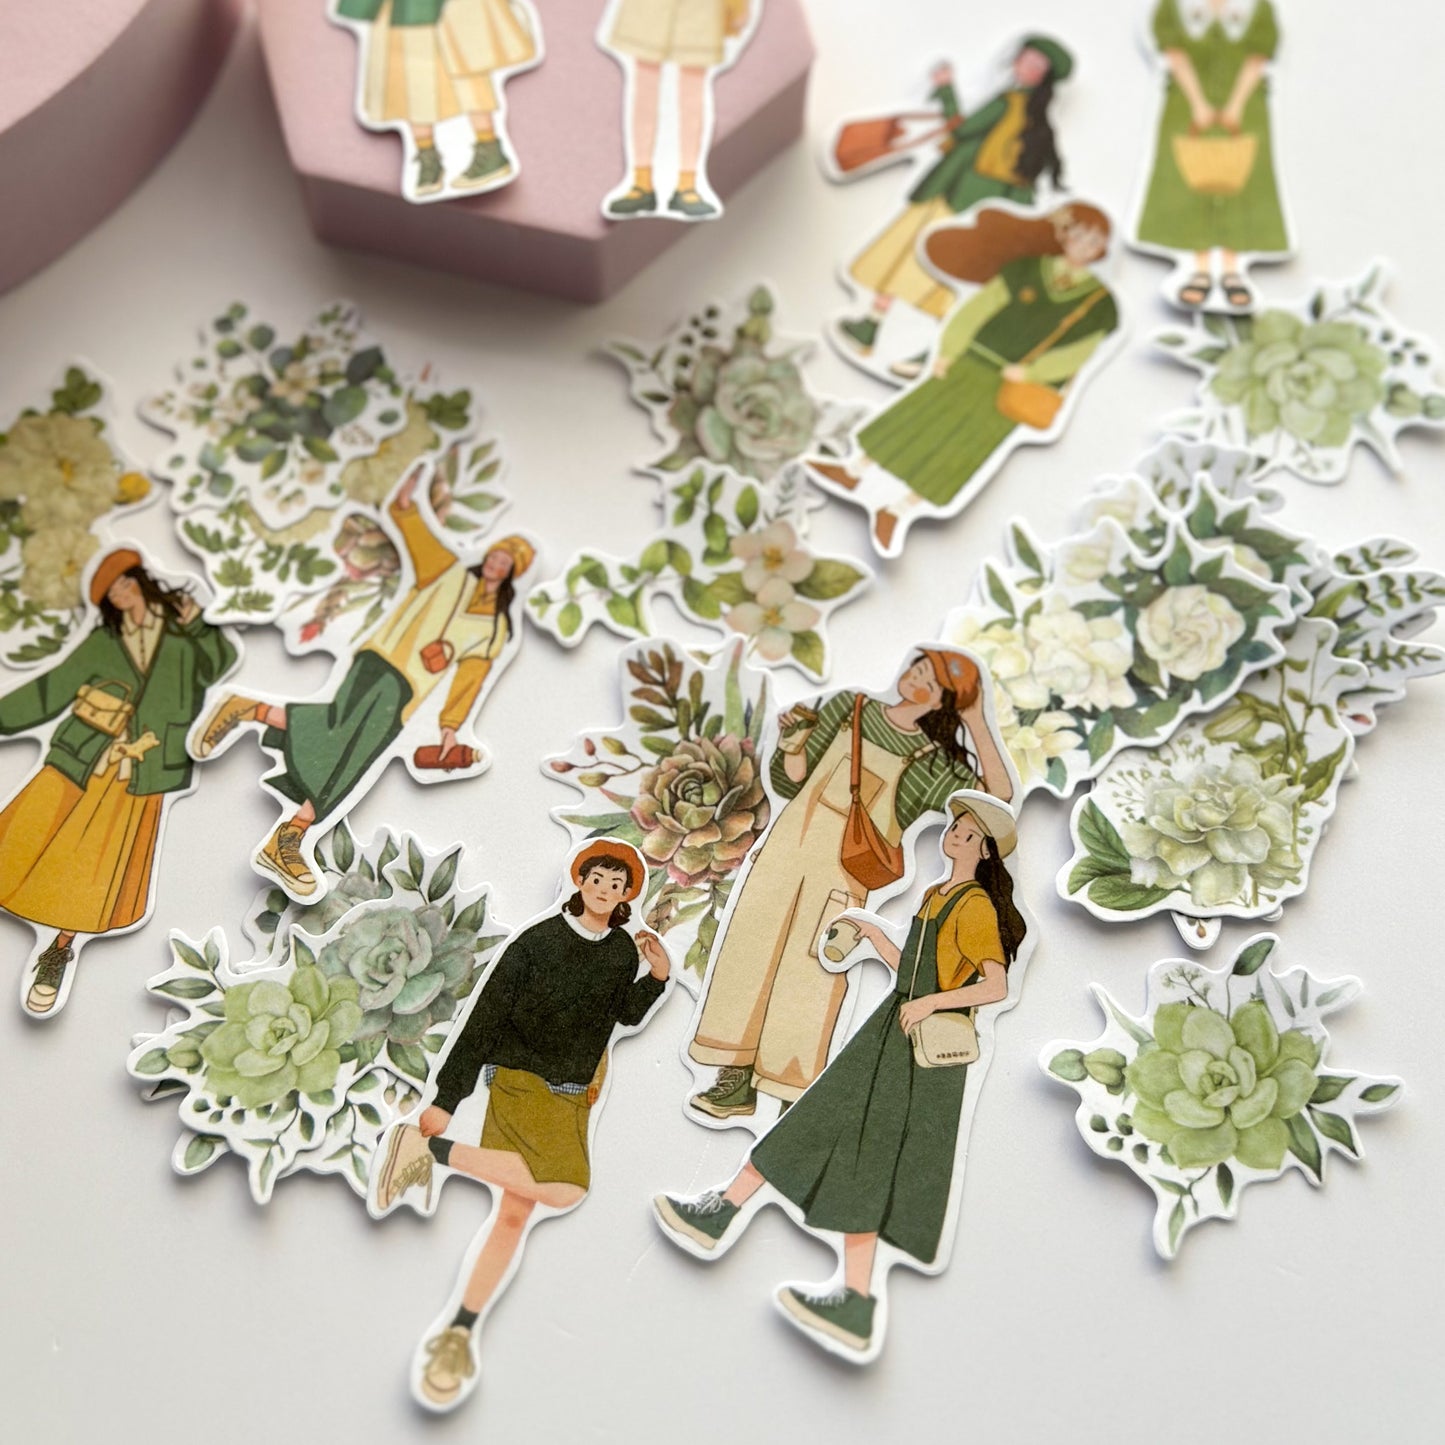 Flower picking girls sticker pack - Green washi stickers